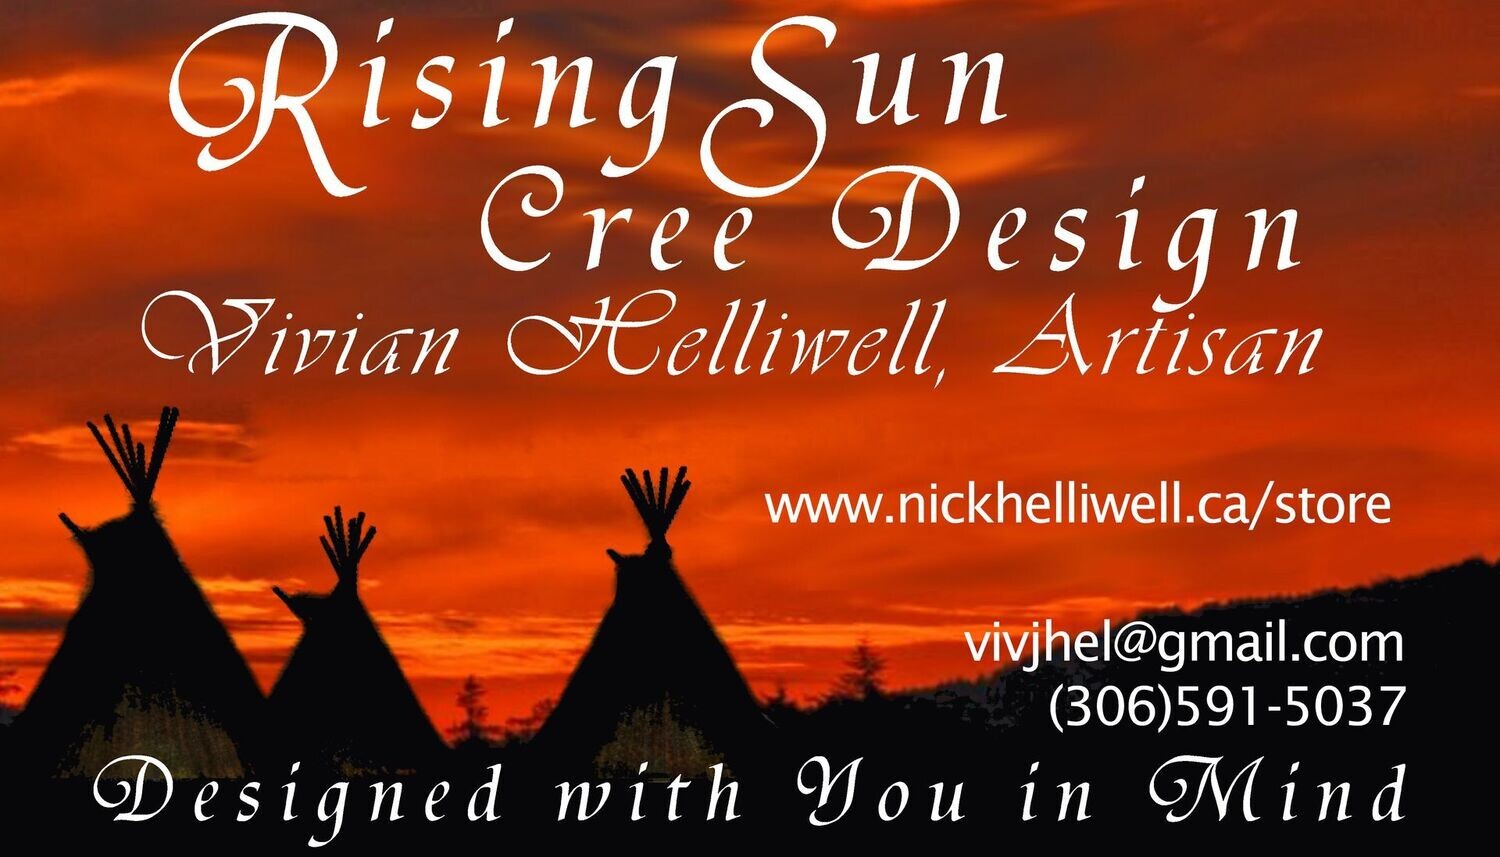 Rising Sun Gift Card